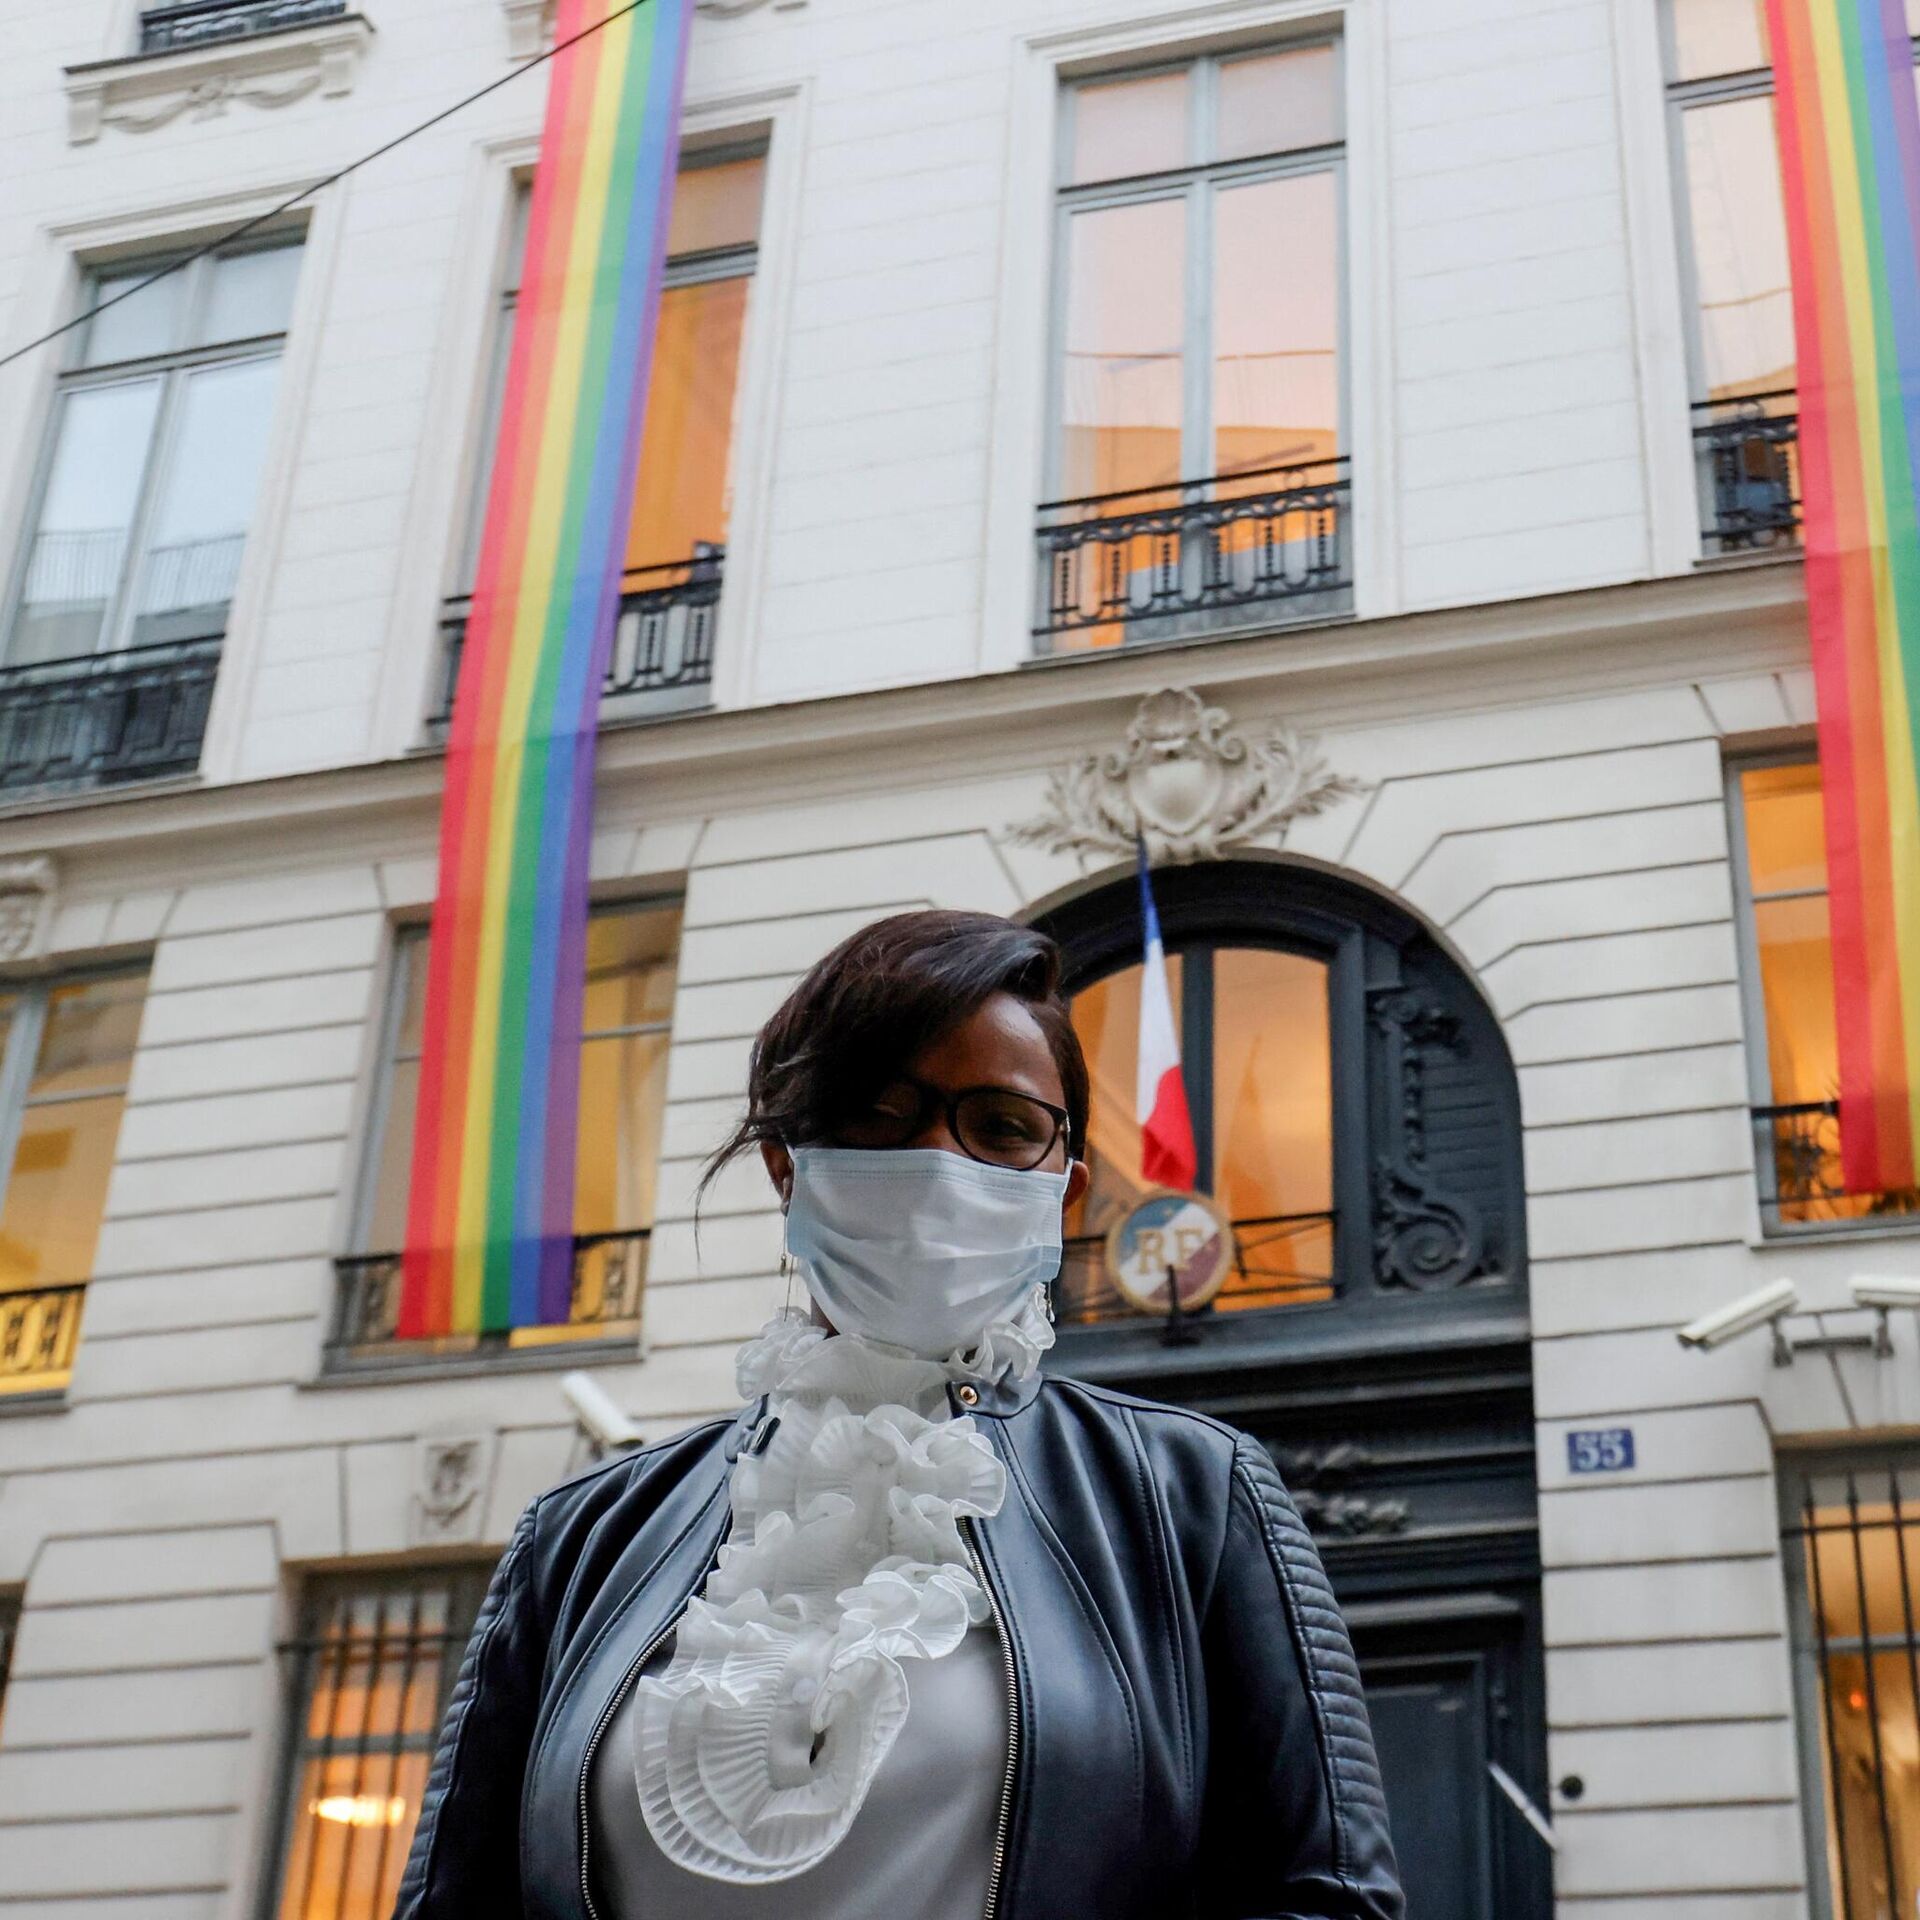 У ЛГБТ будет больше прав, чем у обычных французов. И свой посол |  11.08.2022, ИноСМИ